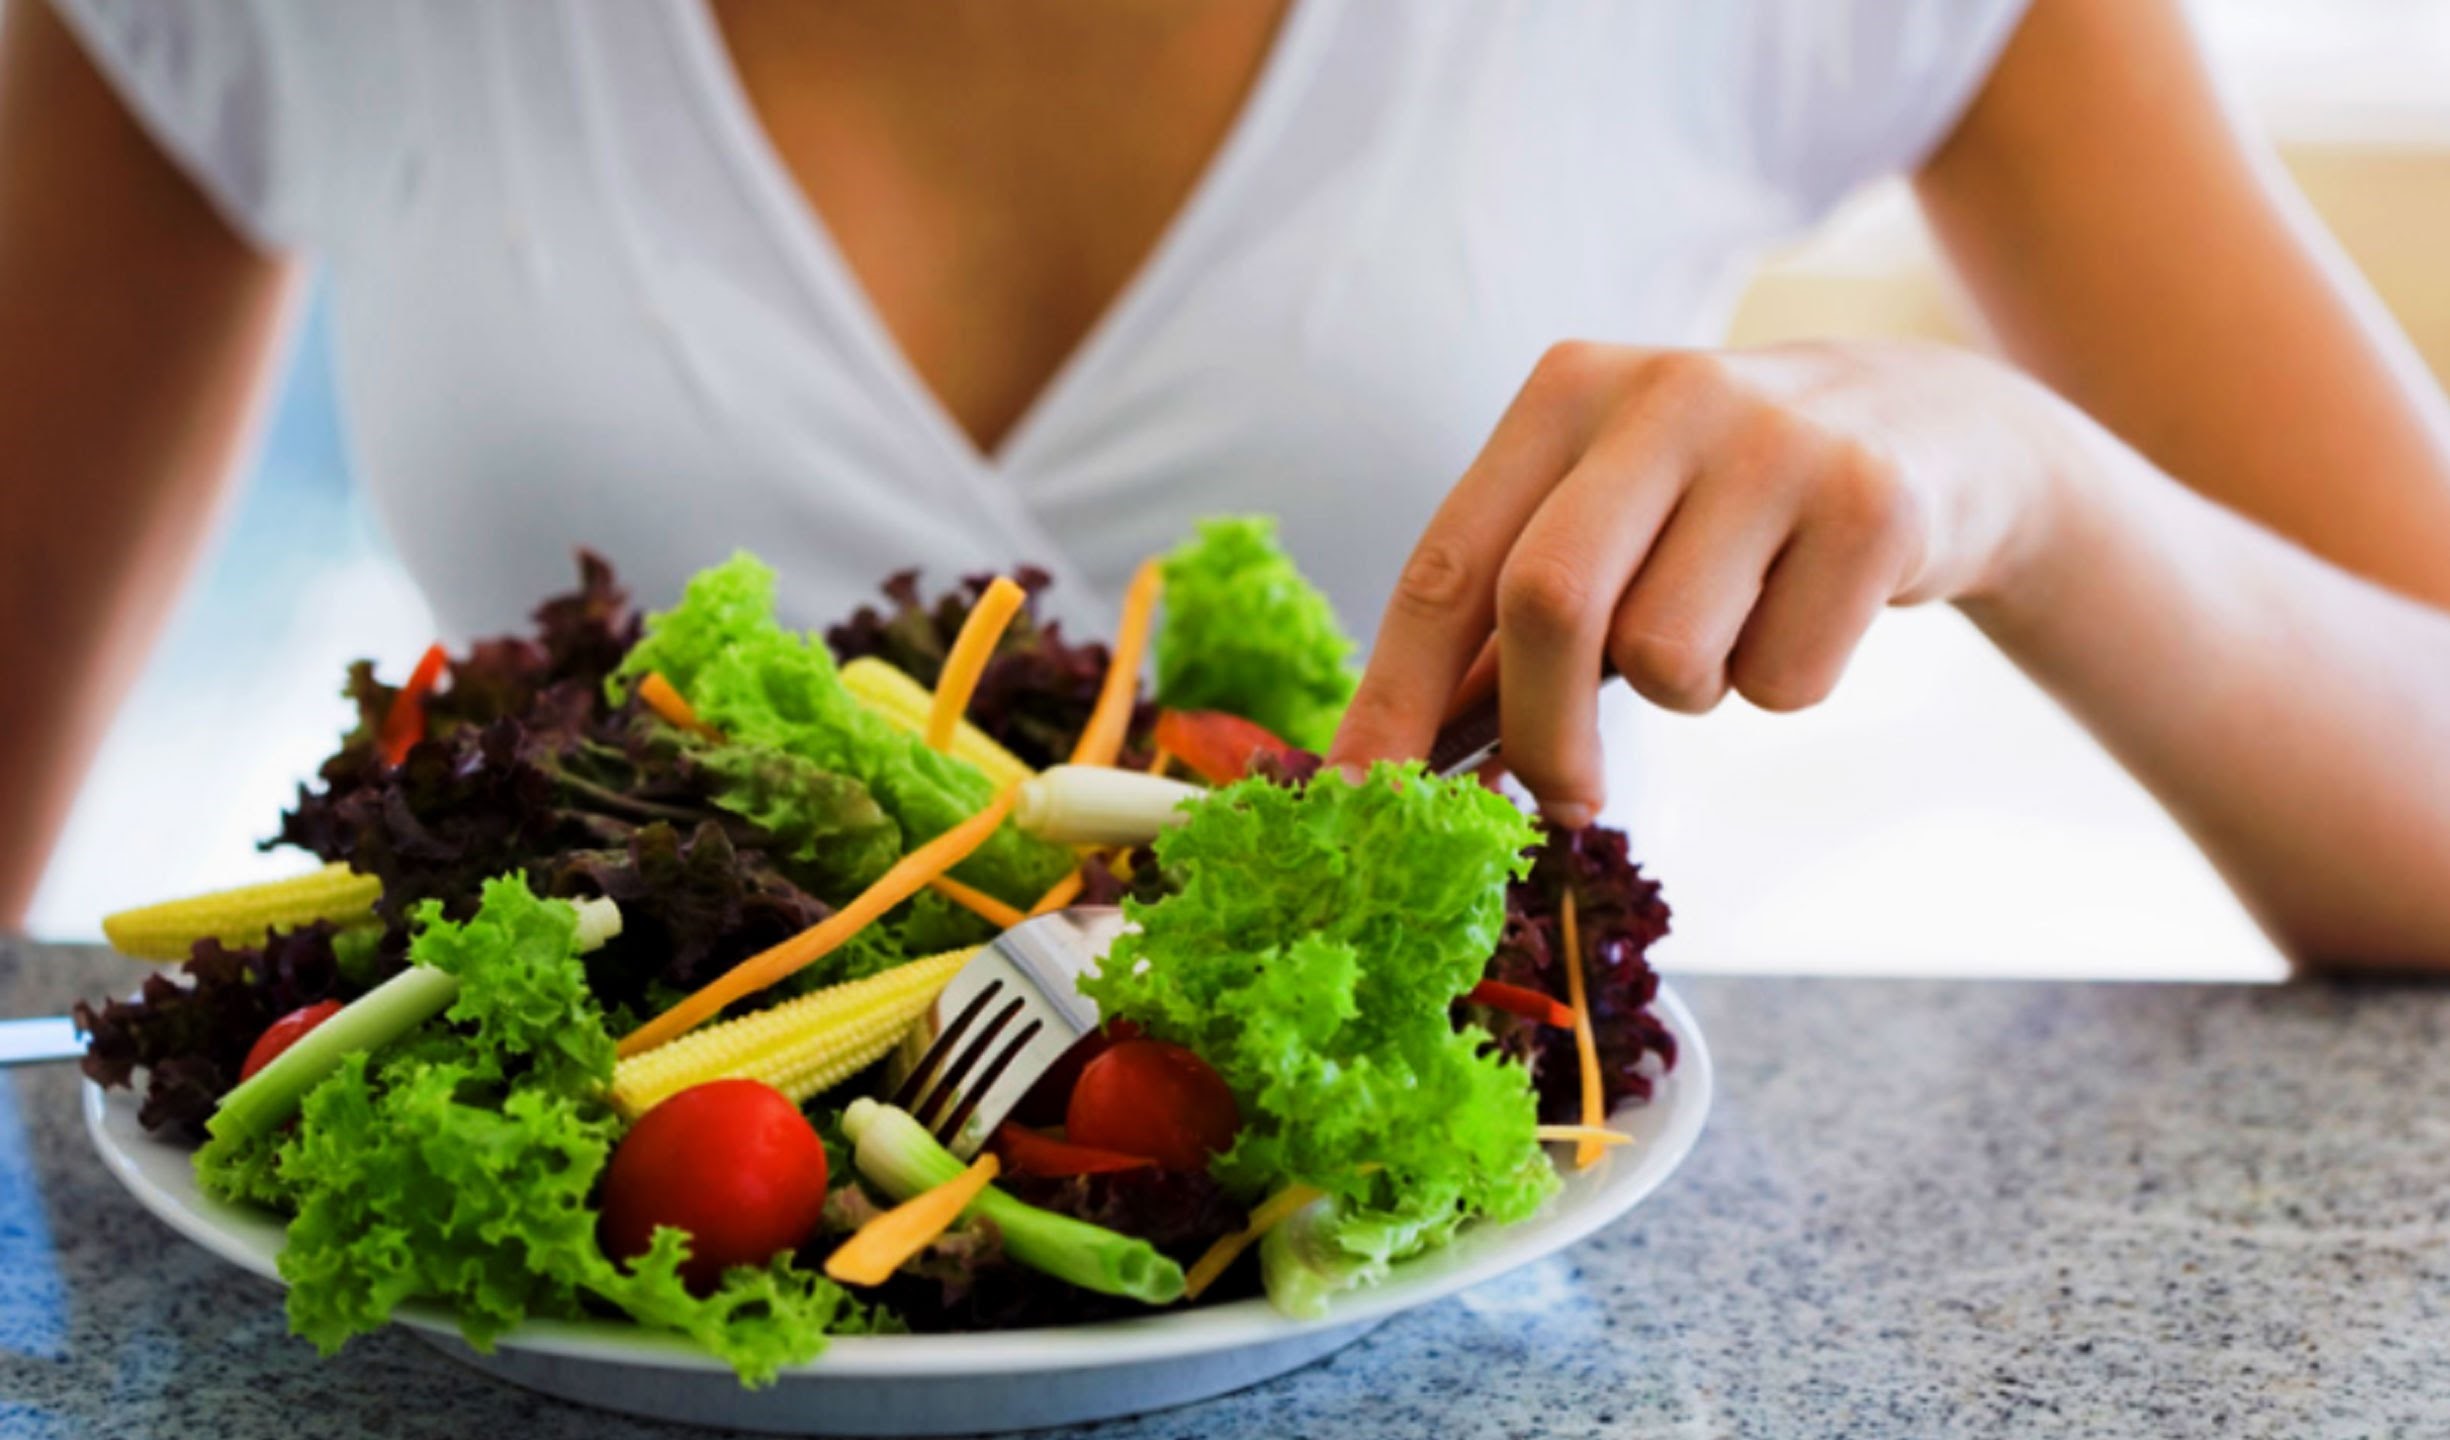 Những người ăn nhiều rau sẽ có xu hướng giảm cân nhanh hơn so với những người ăn nhiều thịt